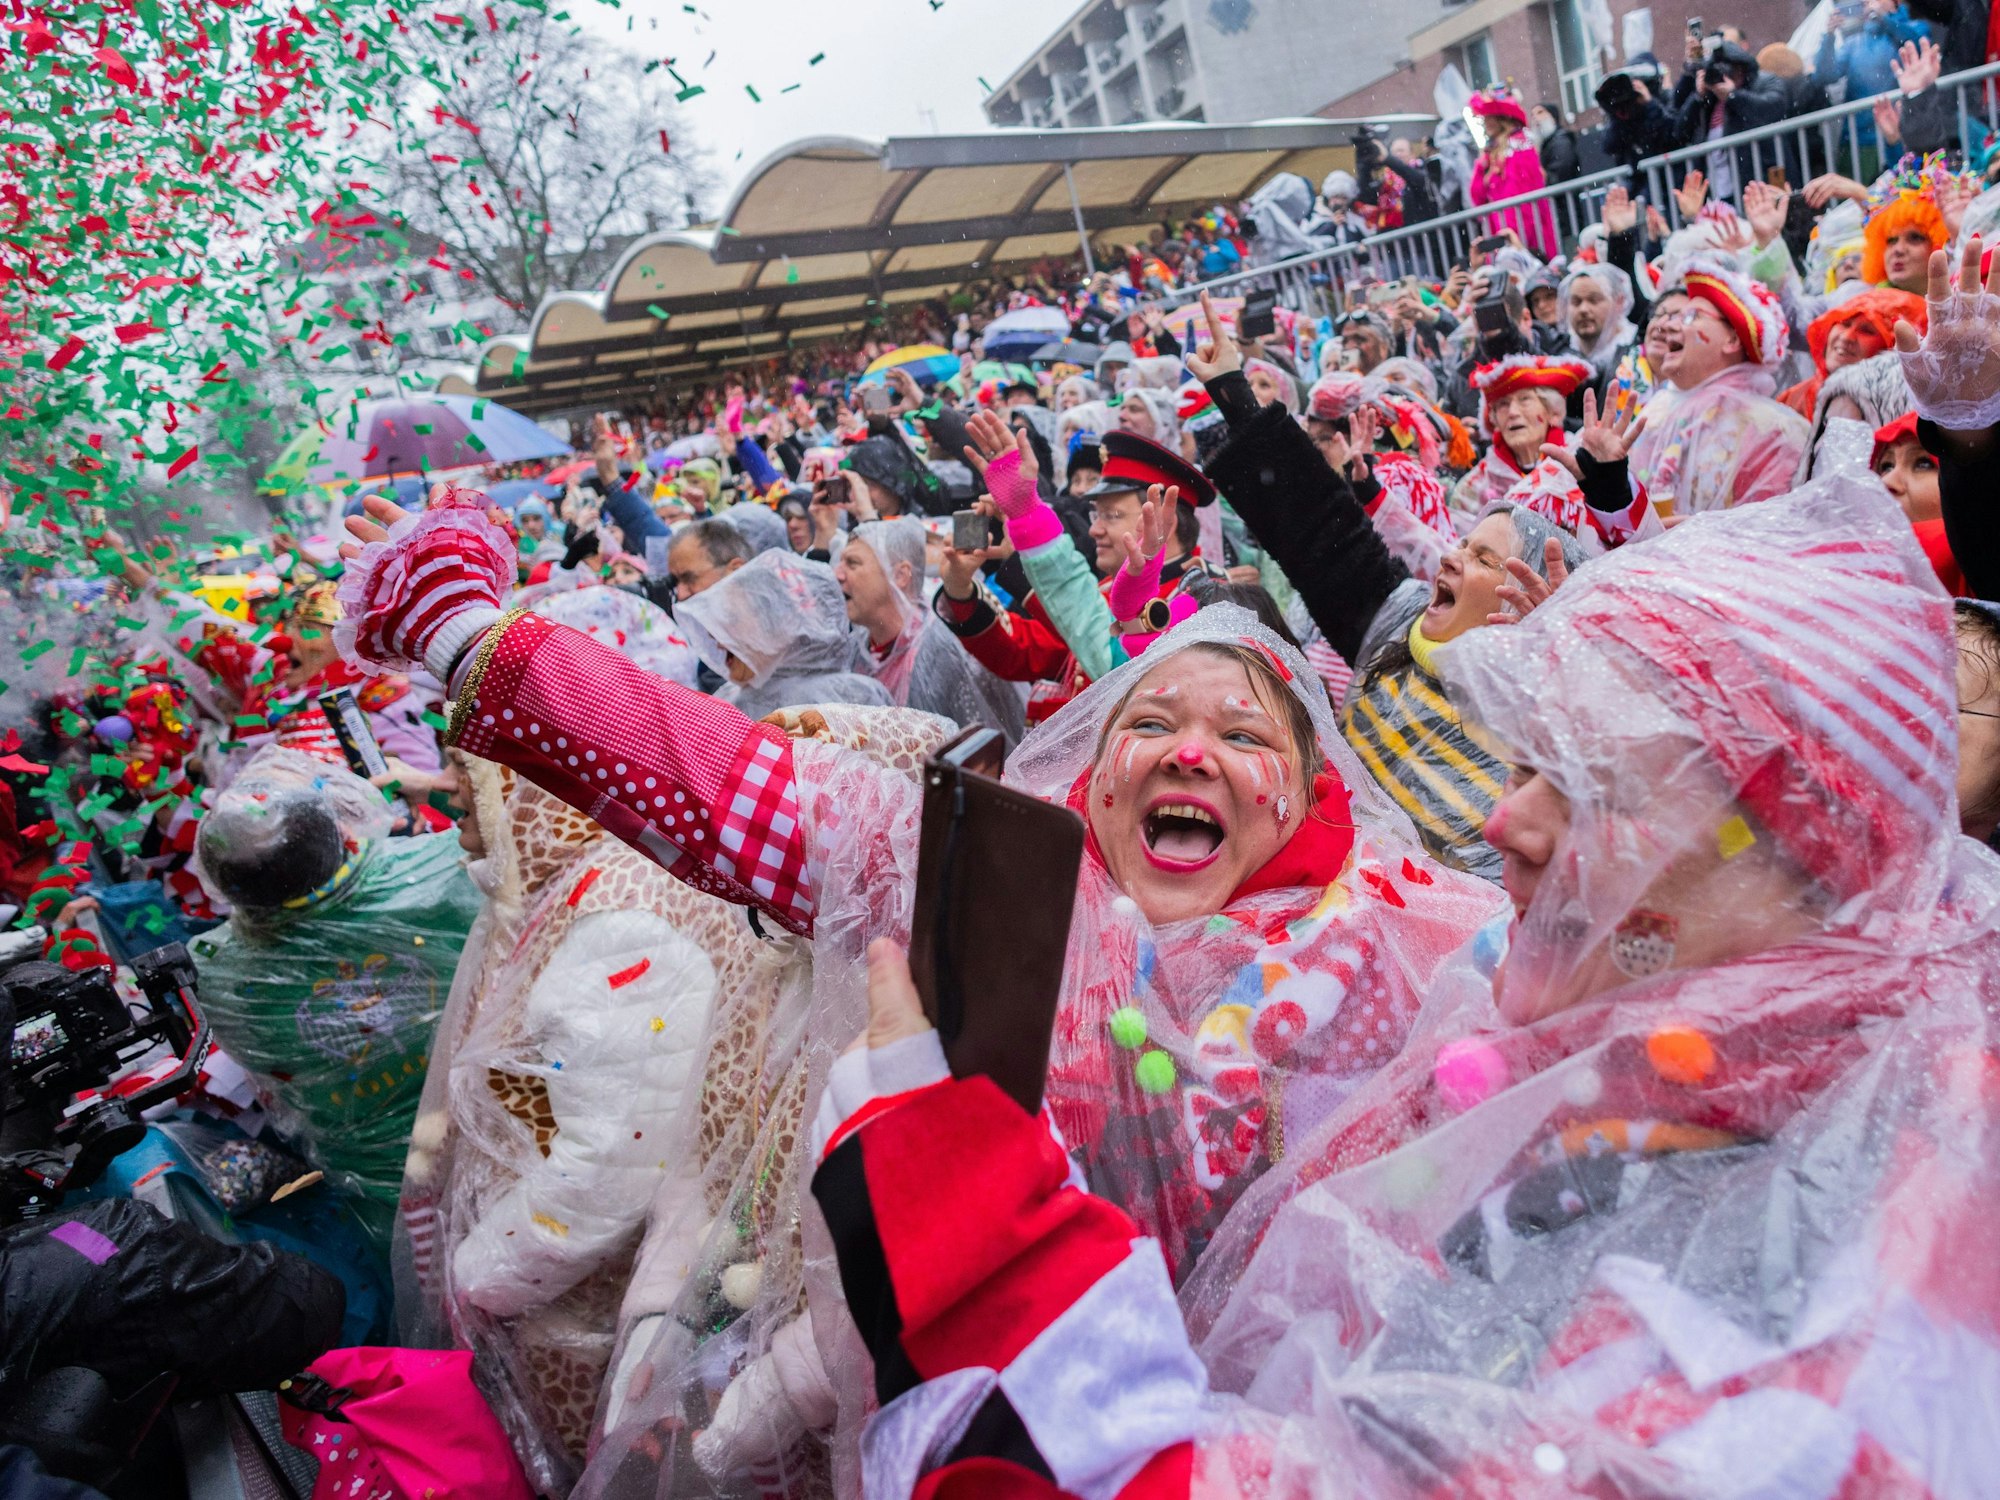 Karnevalisten feiern um 11:11 Uhr an Weiberfastnacht die Eröffnung des Straßenkarnevals auf dem Alter Markt.